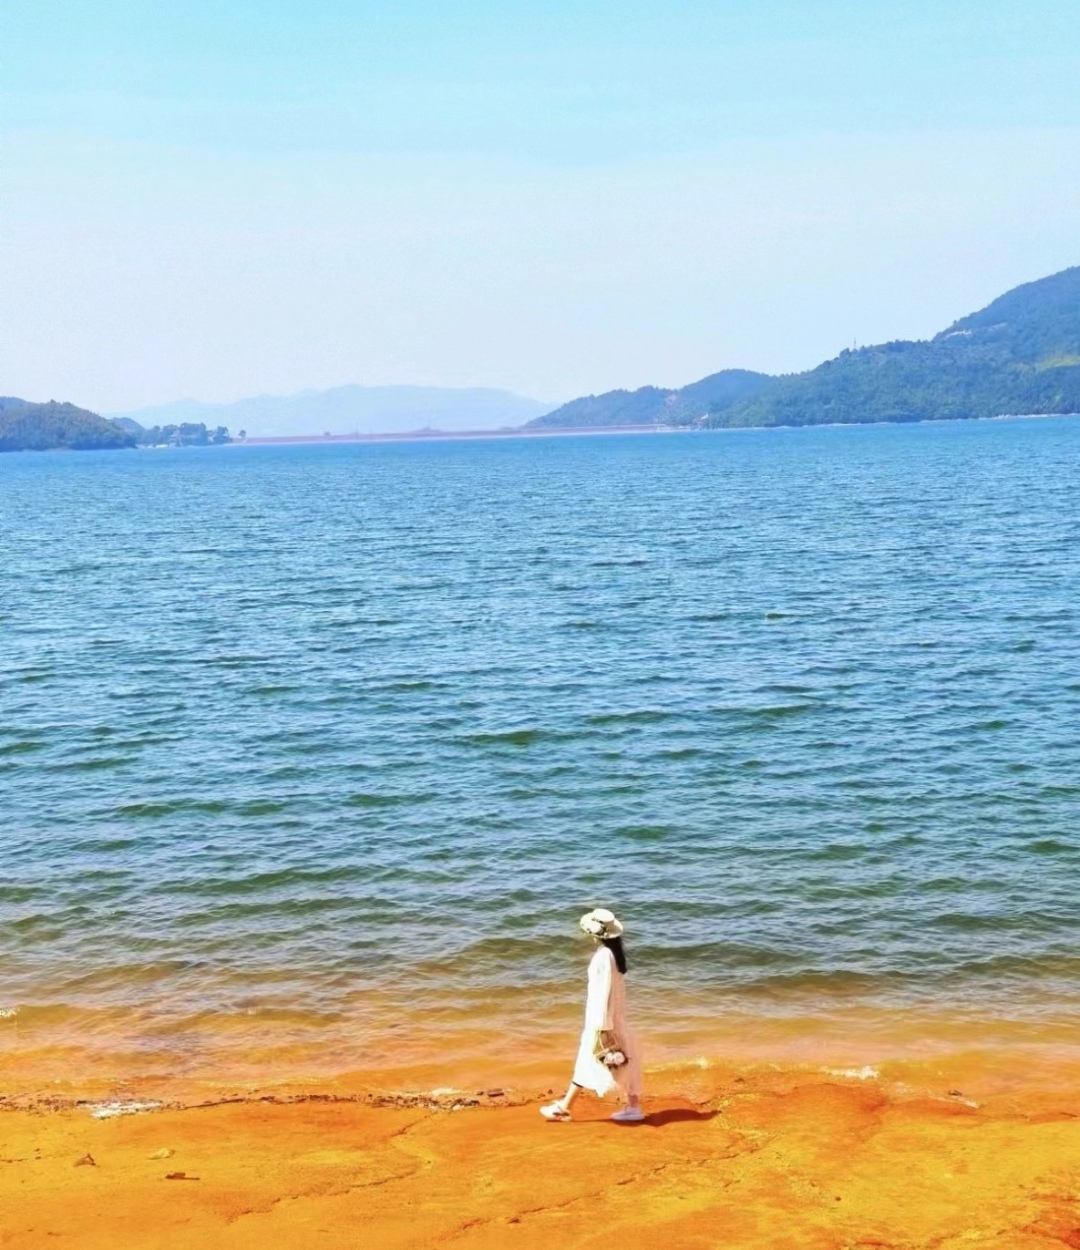 四明湖开元山庄景色美丽，朝似青天暮如金阳，服务员小鱼妹妹态度热情周到，准备下次再来玩…